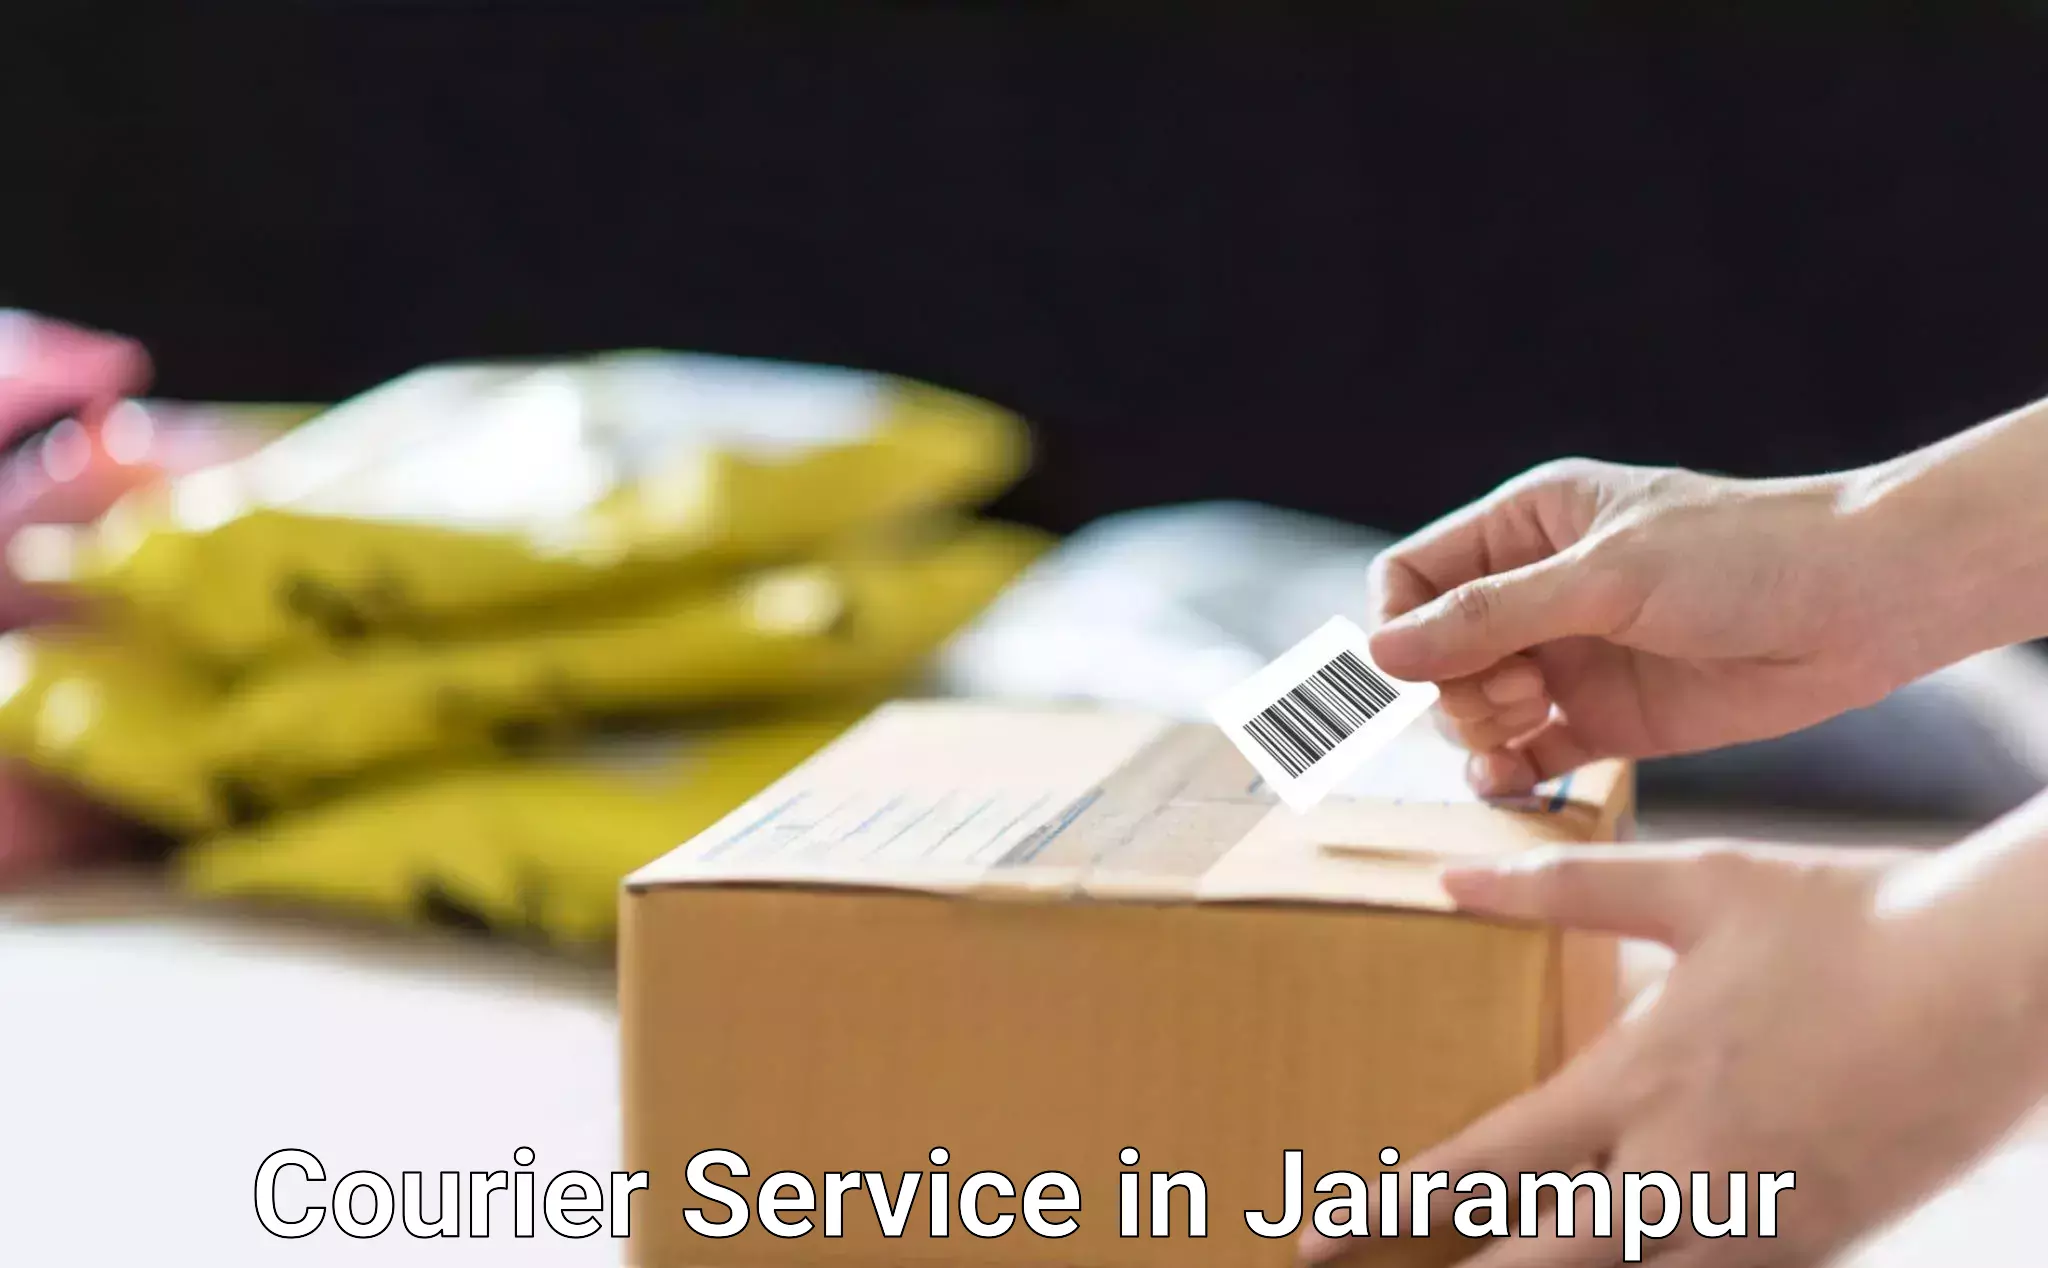 Nationwide shipping capabilities in Jairampur